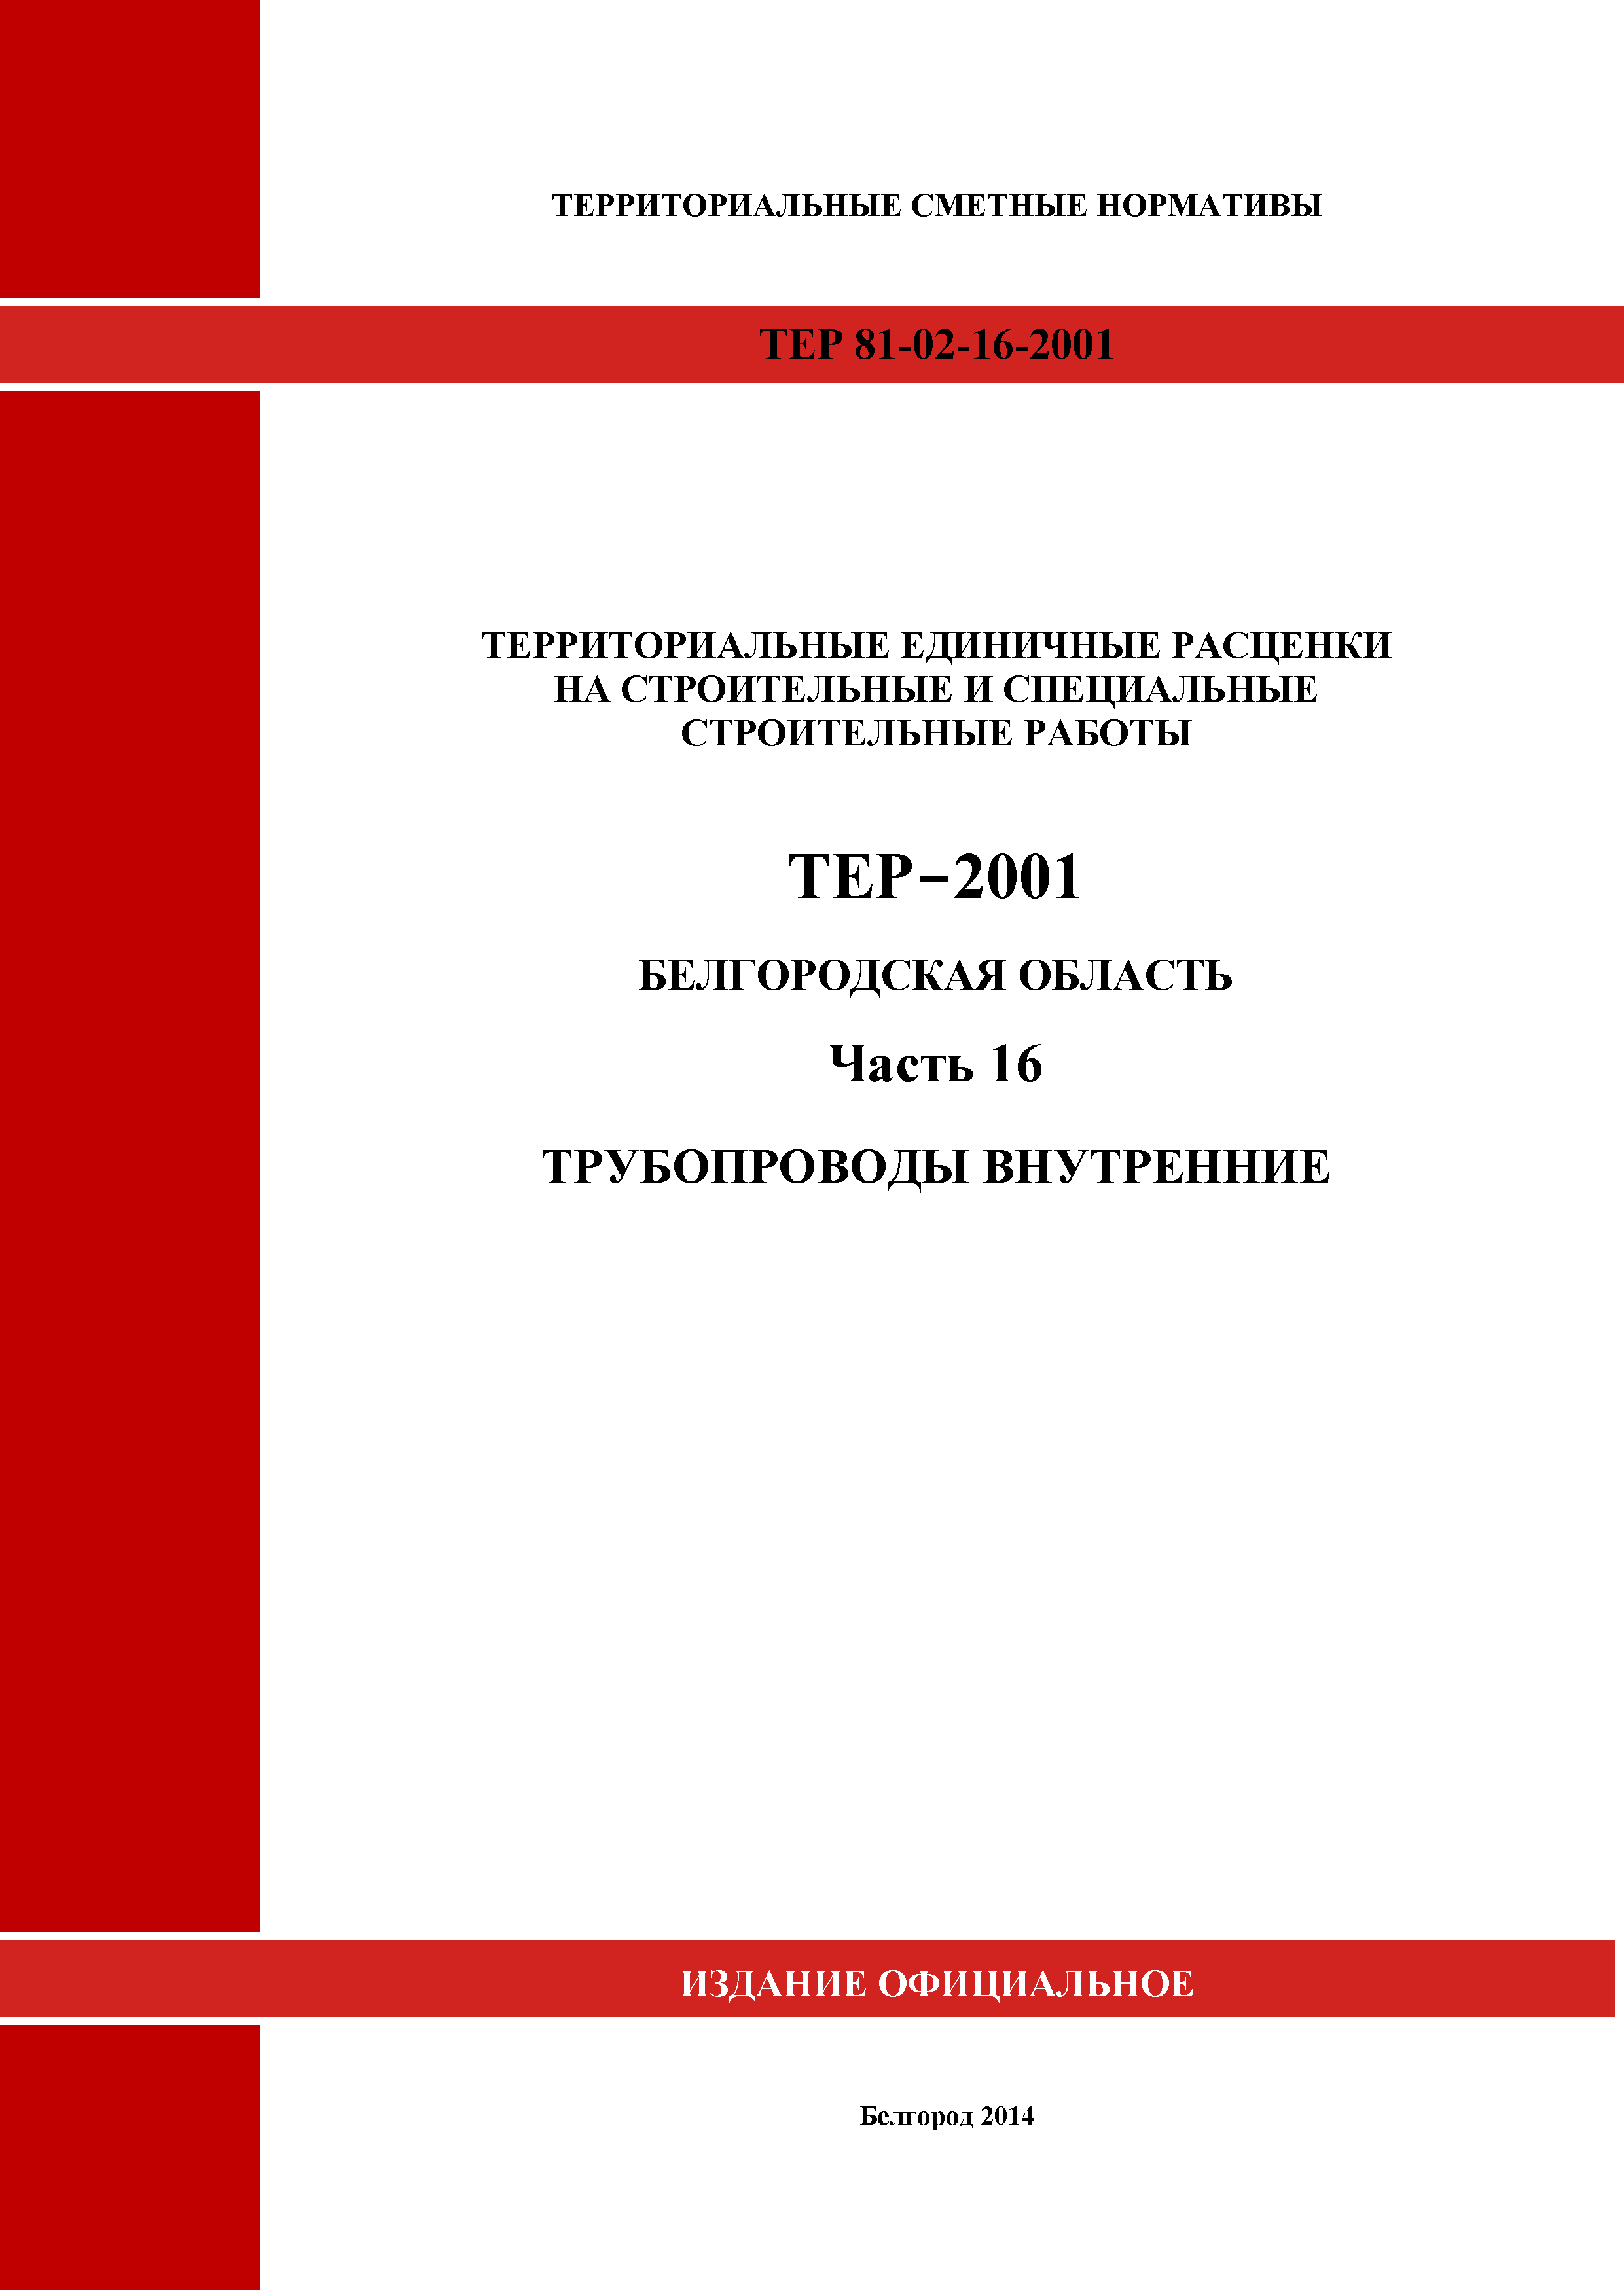 ТЕР Белгородская область 81-02-16-2001